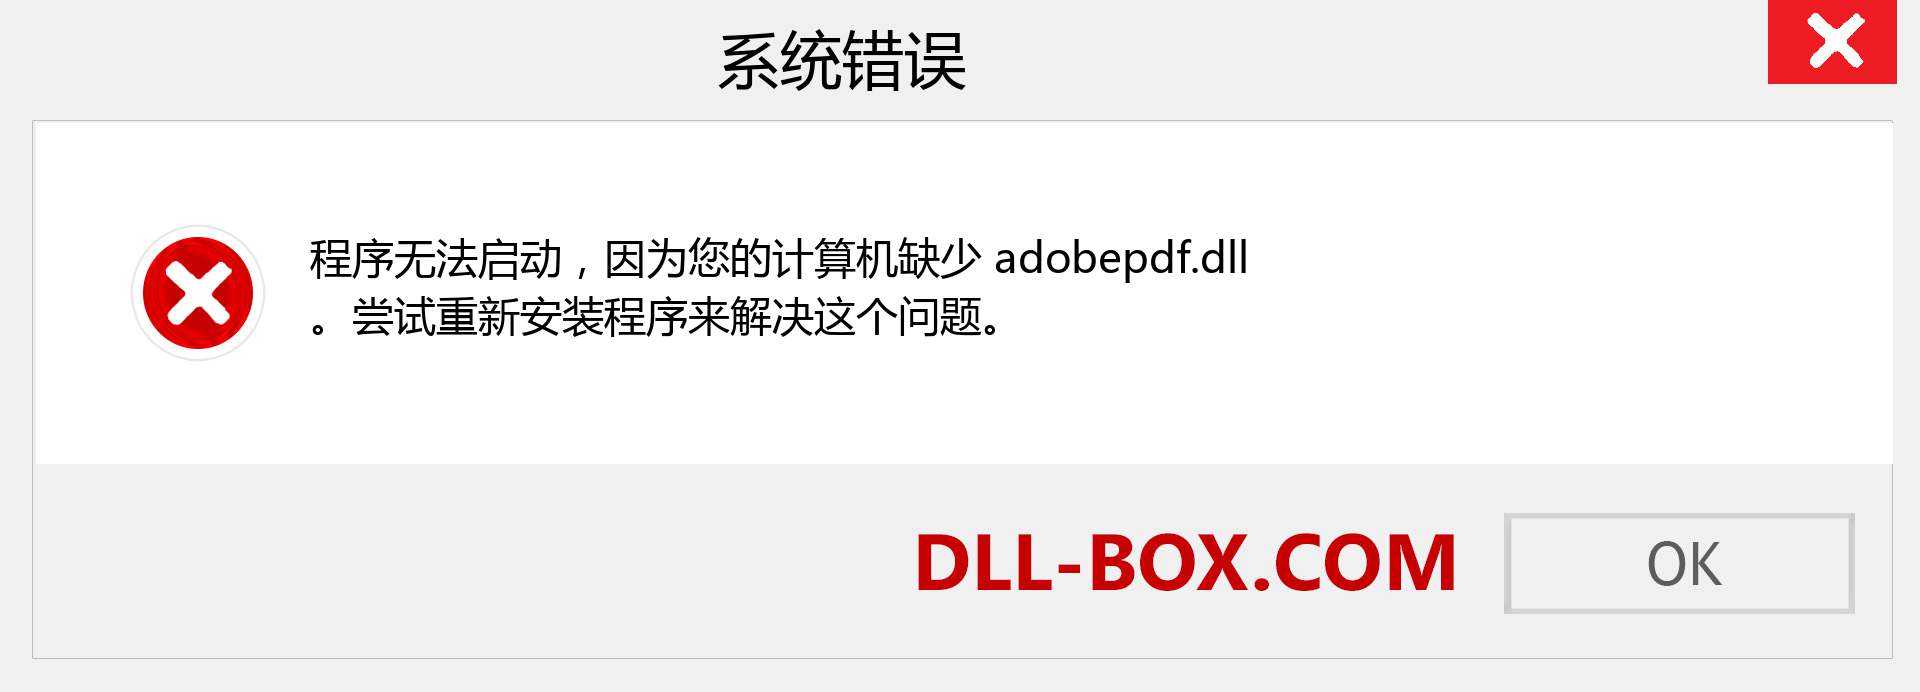 adobepdf.dll 文件丢失？。 适用于 Windows 7、8、10 的下载 - 修复 Windows、照片、图像上的 adobepdf dll 丢失错误